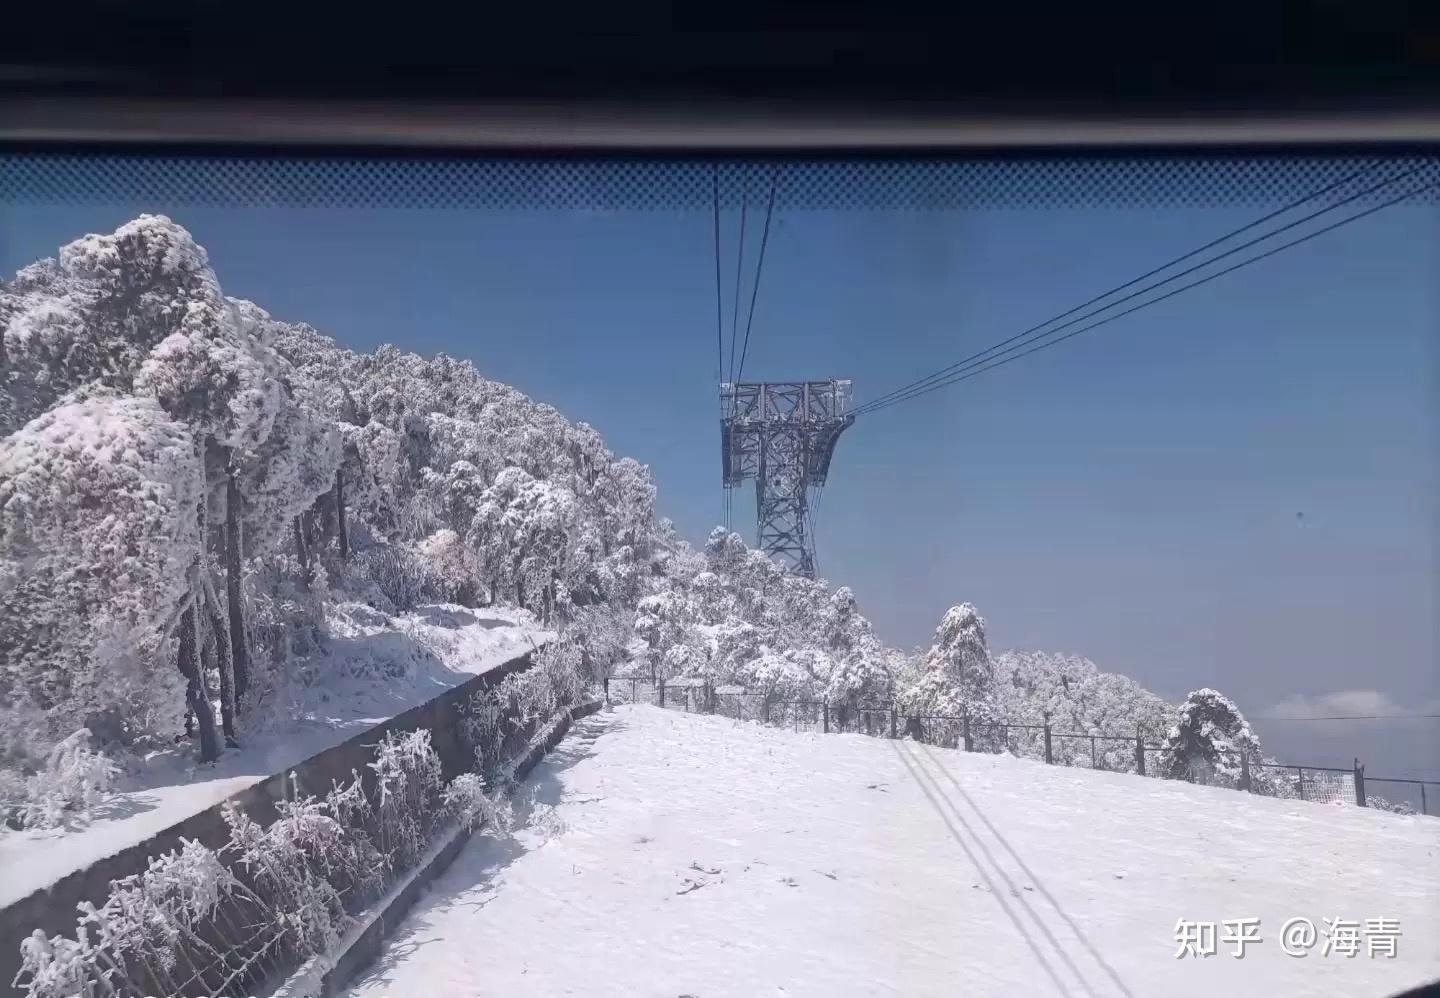 偶遇庐山第一场雪 - 问摄影